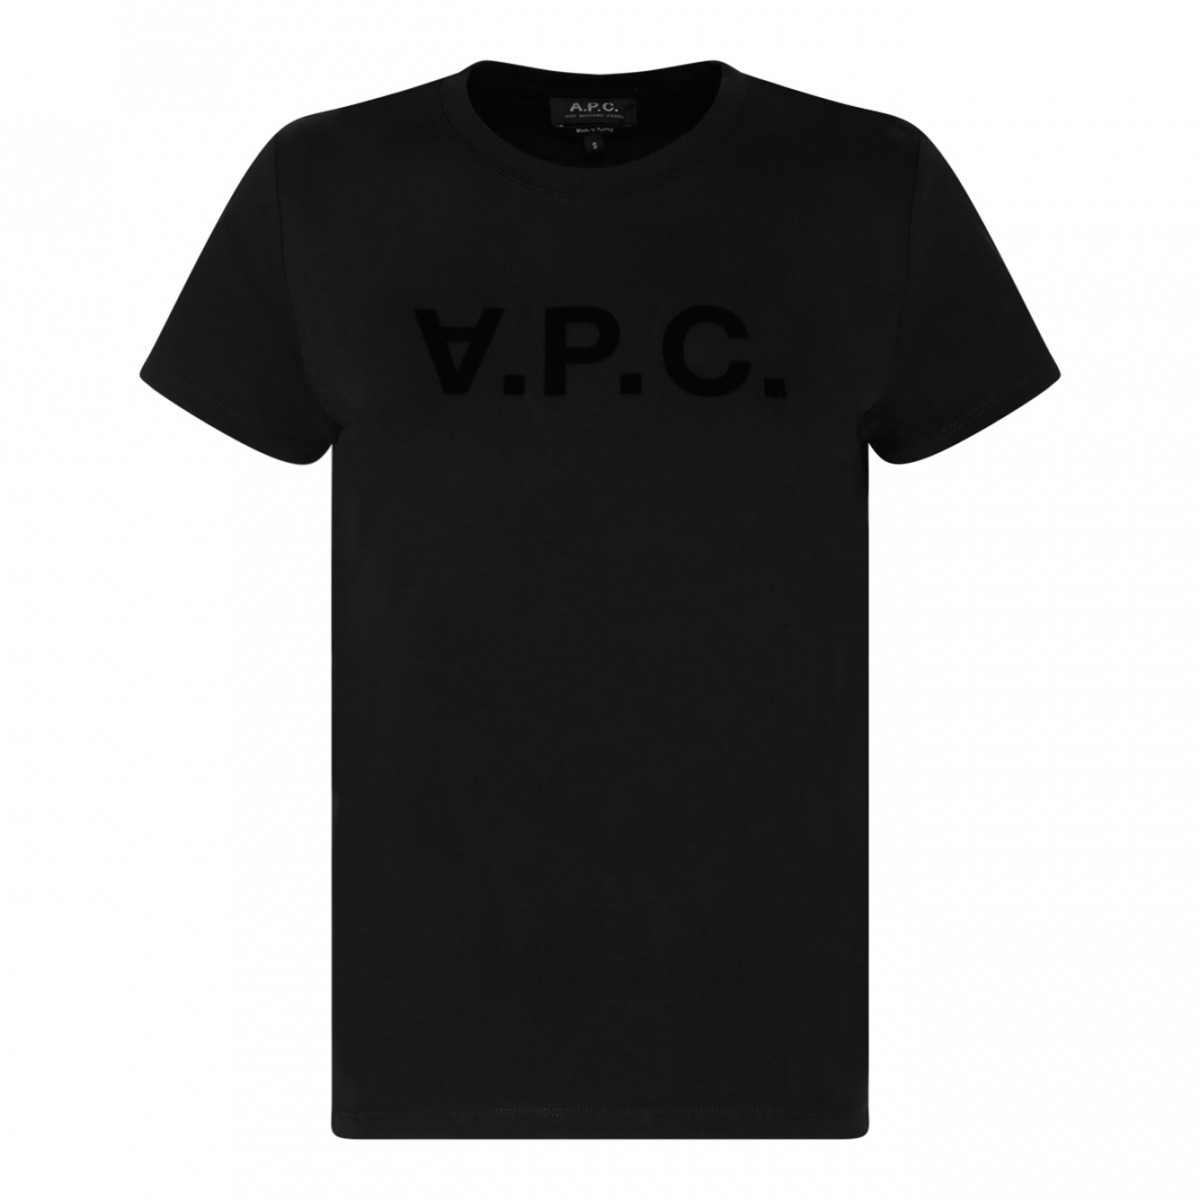 A.P.C. Black Cotton Logo Print T-Shirt.